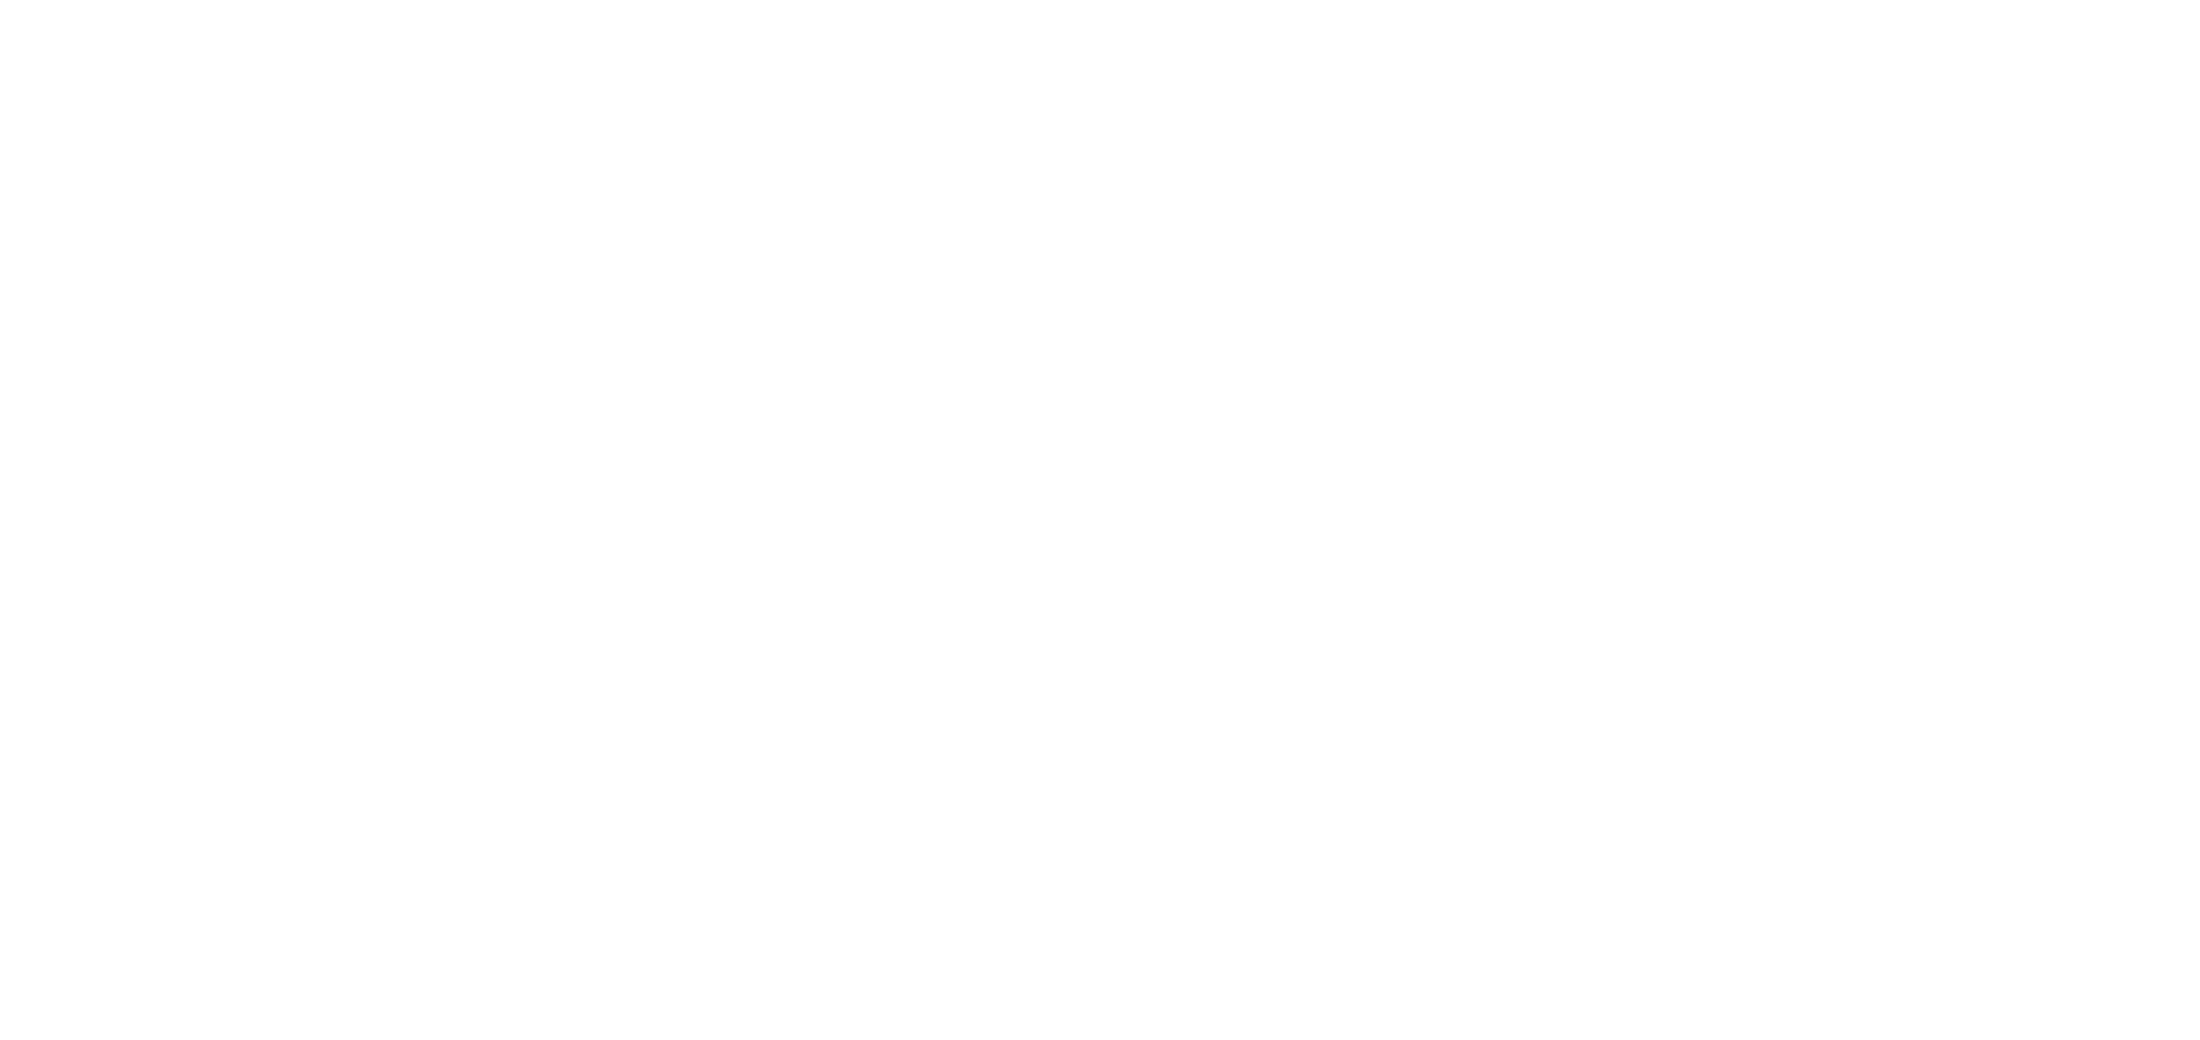 KOKURA LIVE 2024